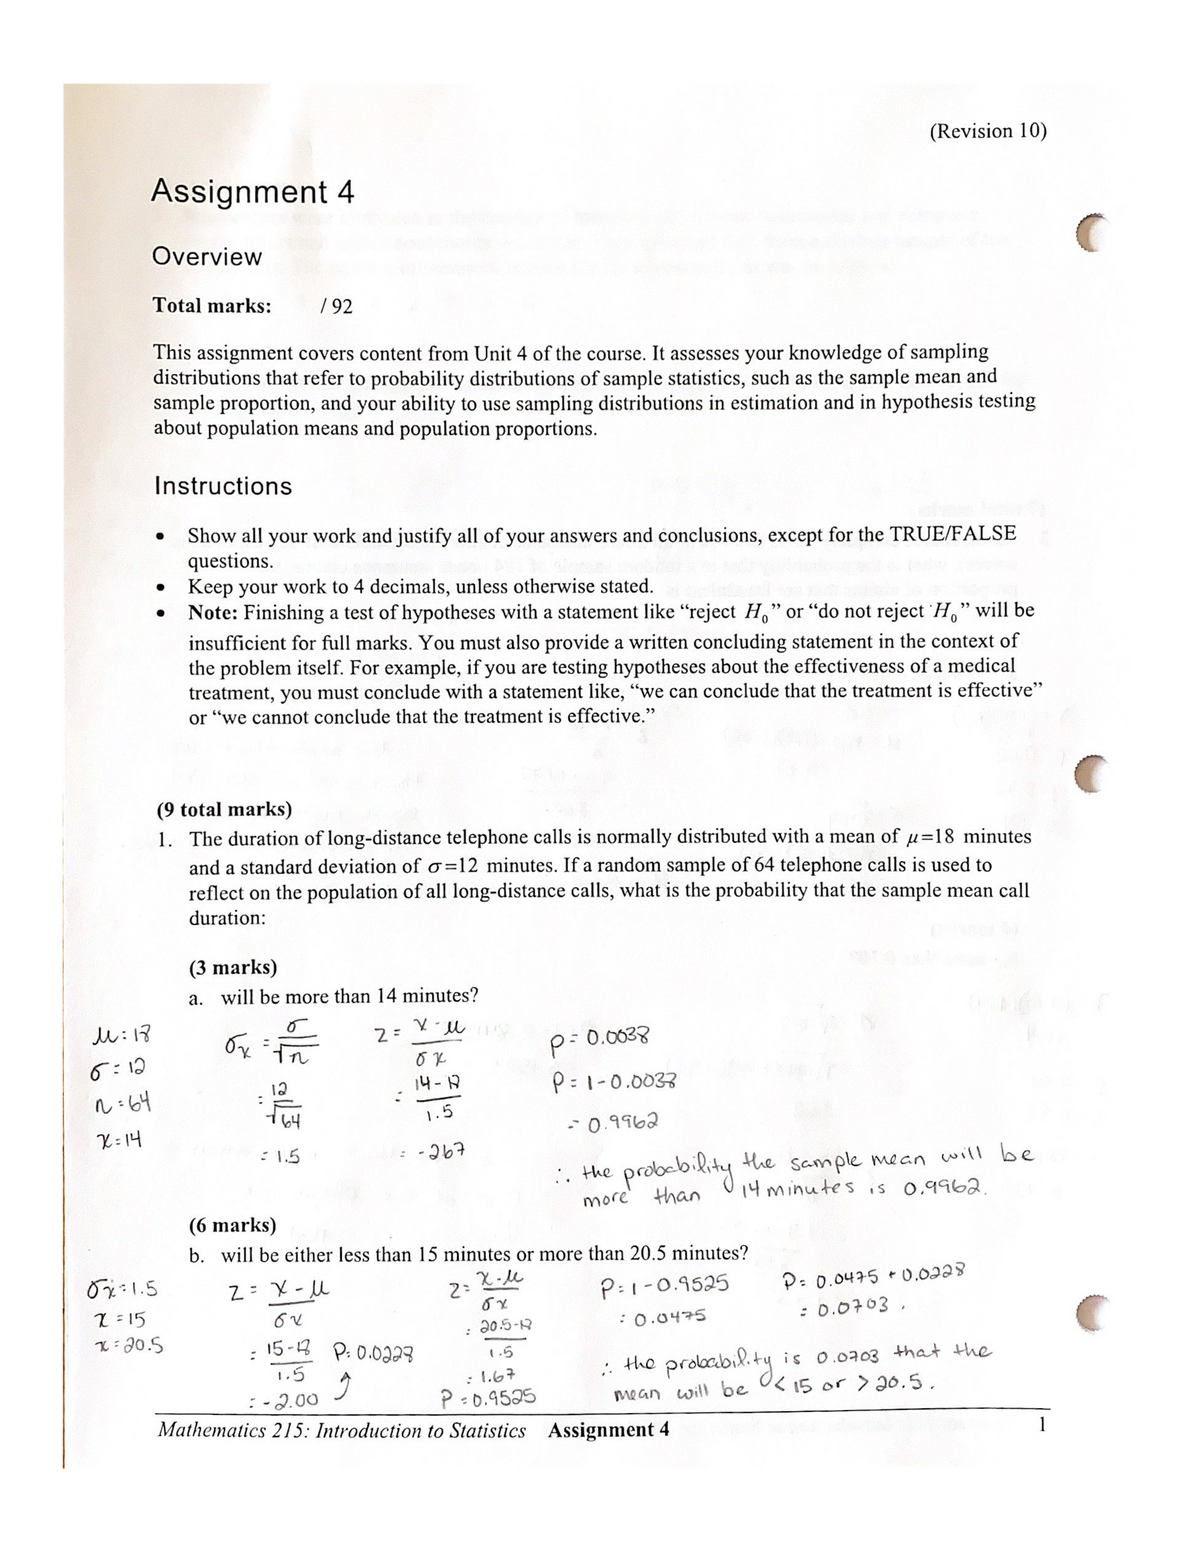 math 215 assignment 4